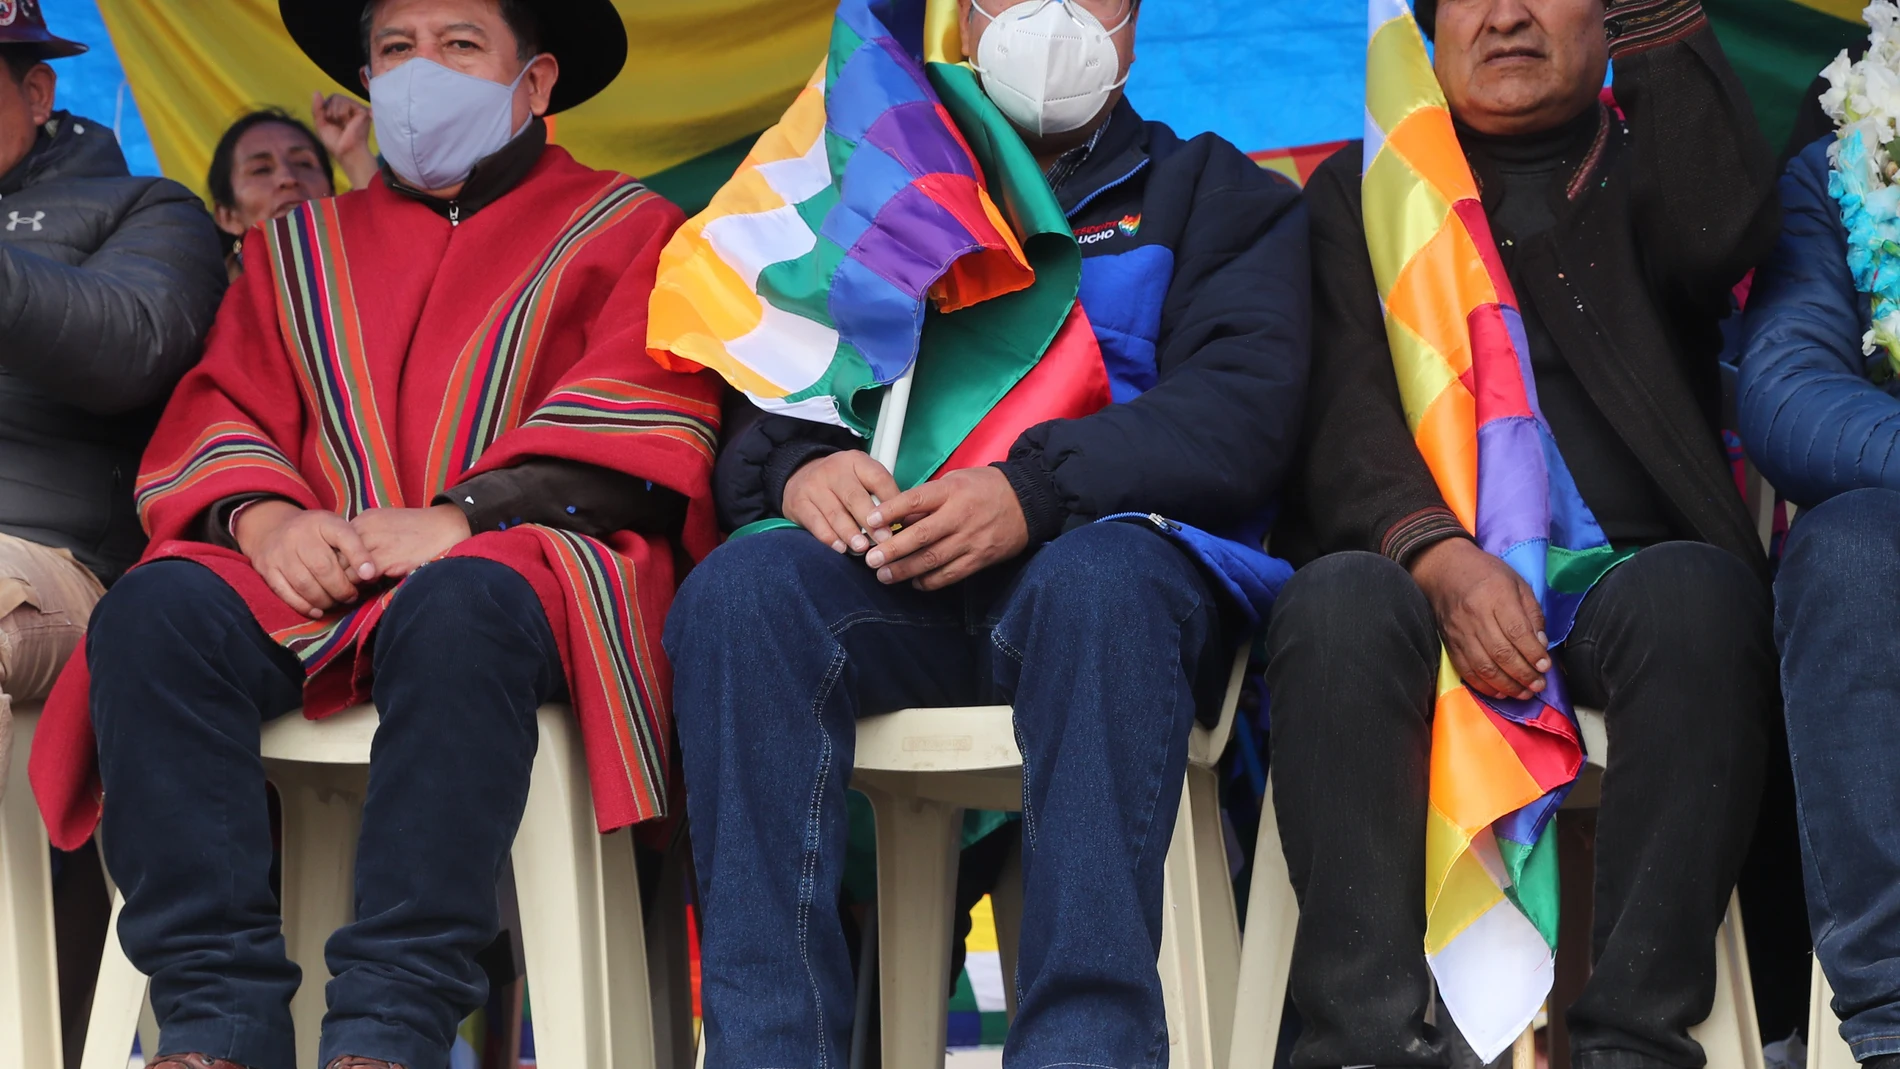 AME9884. CARACOLLO (BOLIVIA), 23/11/2021.- El exmandatario Evo Morales (d) junto al presidente de Bolivia Luis Arce (c) y el vicepresidente David Choquehuanca (i) inician hoy la "marcha por la patria" desde la localidad de Caracollo (Bolivia). El presidente de Bolivia, Luis Arce, advirtió este martes que el voto popular se hará "respetar en las calles" al tiempo que hizo un llamado a la "unidad" ante miles de personas que se congregaron para dar inicio a la "marcha por la patria". EFE/Martin Alipaz